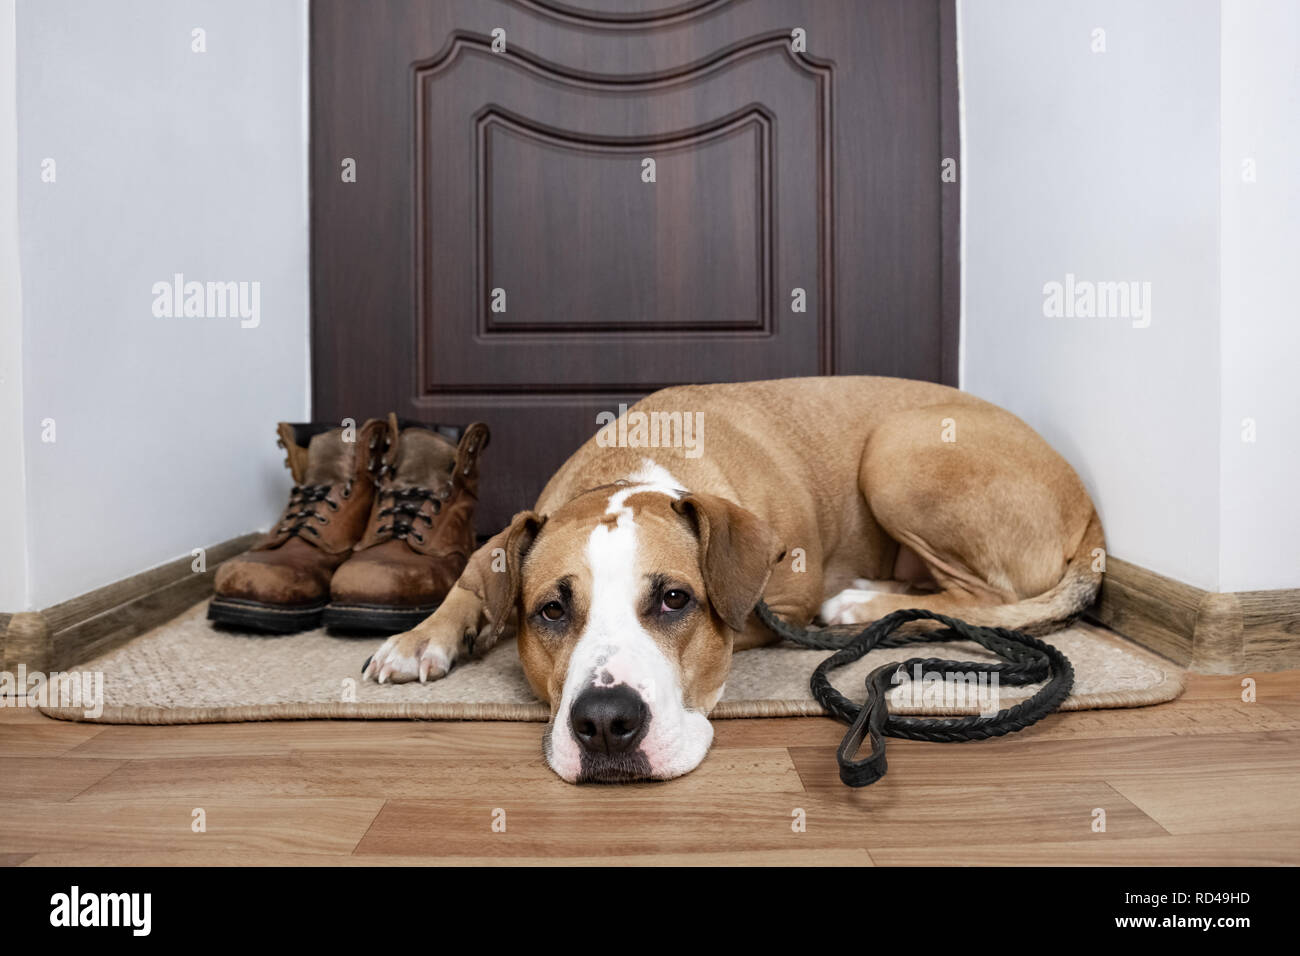 Chien avec une laisse en attente d'une marche. Staffordshire terrier chien avec une laisse allongé sur une natte près de la porte de l'appartement. Banque D'Images